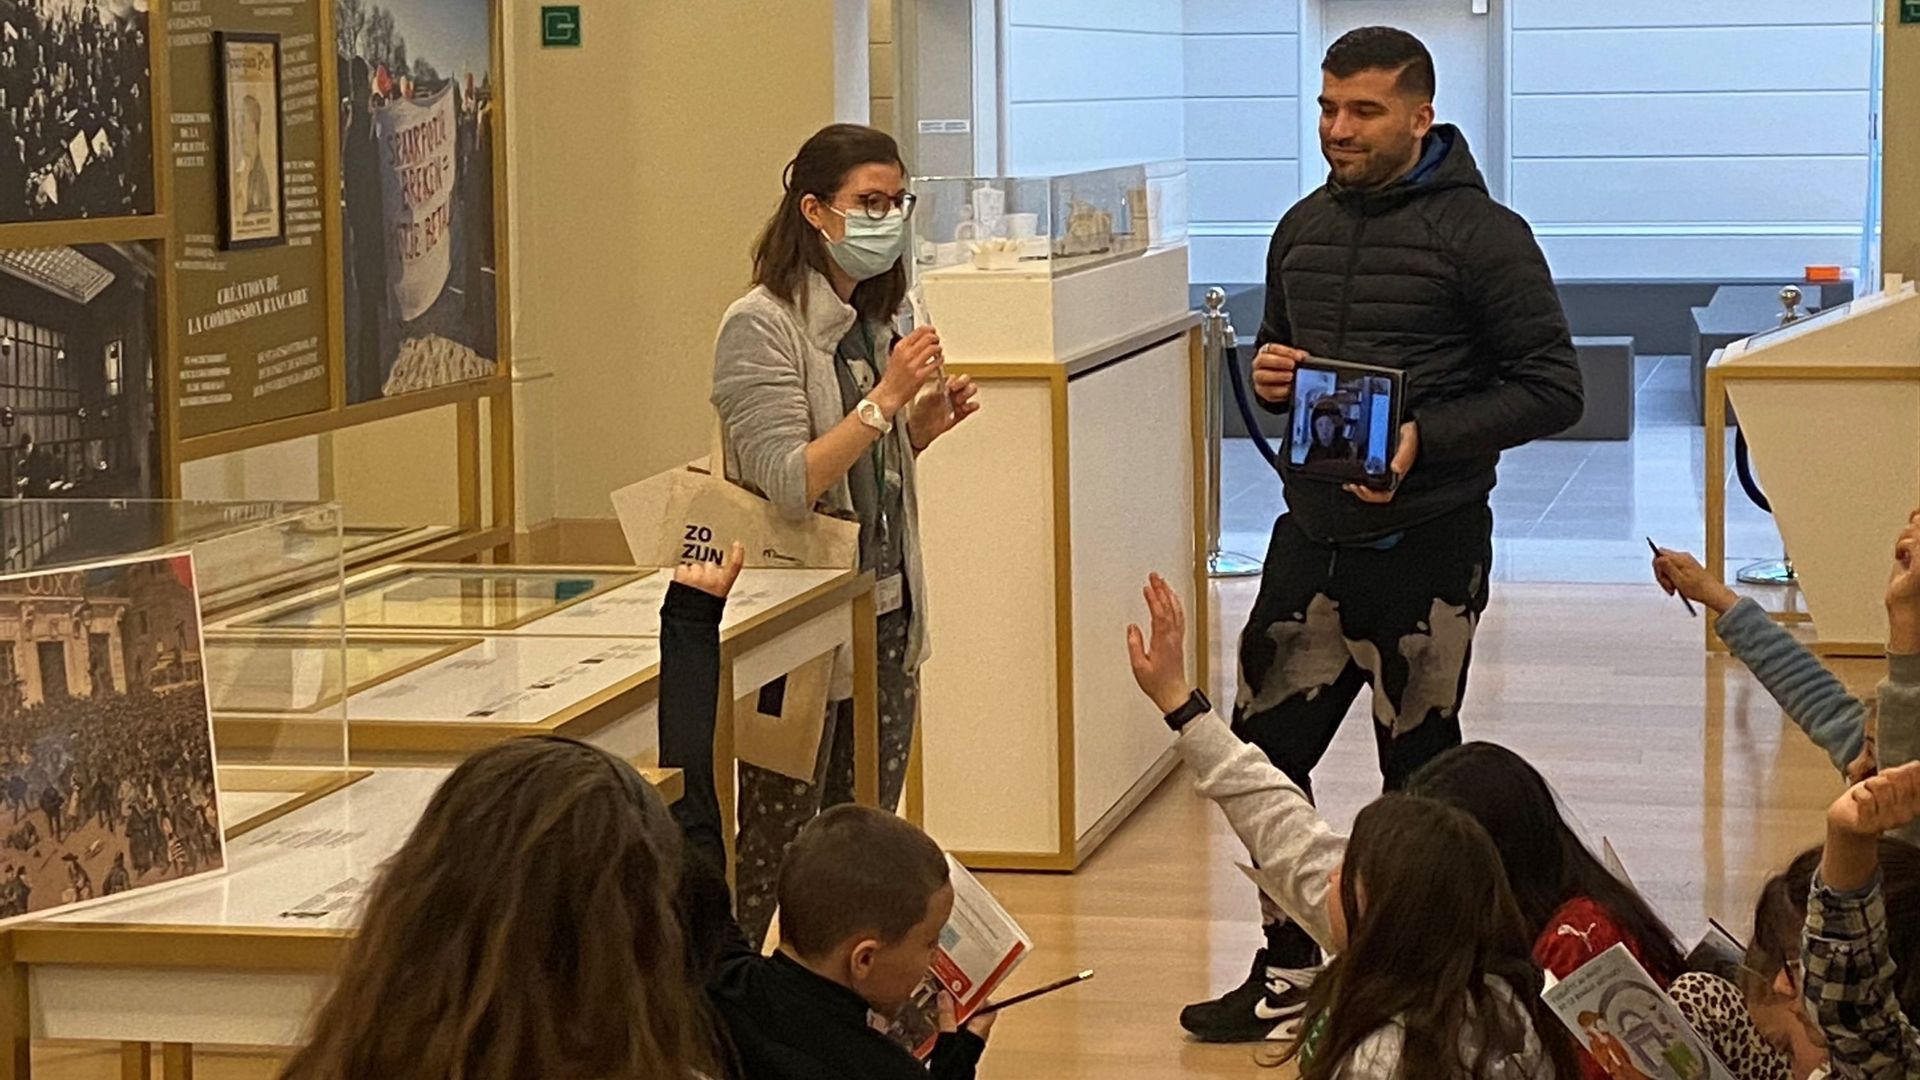 Une classe schaerbeekoise en visite au Musée de la Banque nationale. La tablette permet à un enfant qui doit rester à la maison de participer à l’activité.